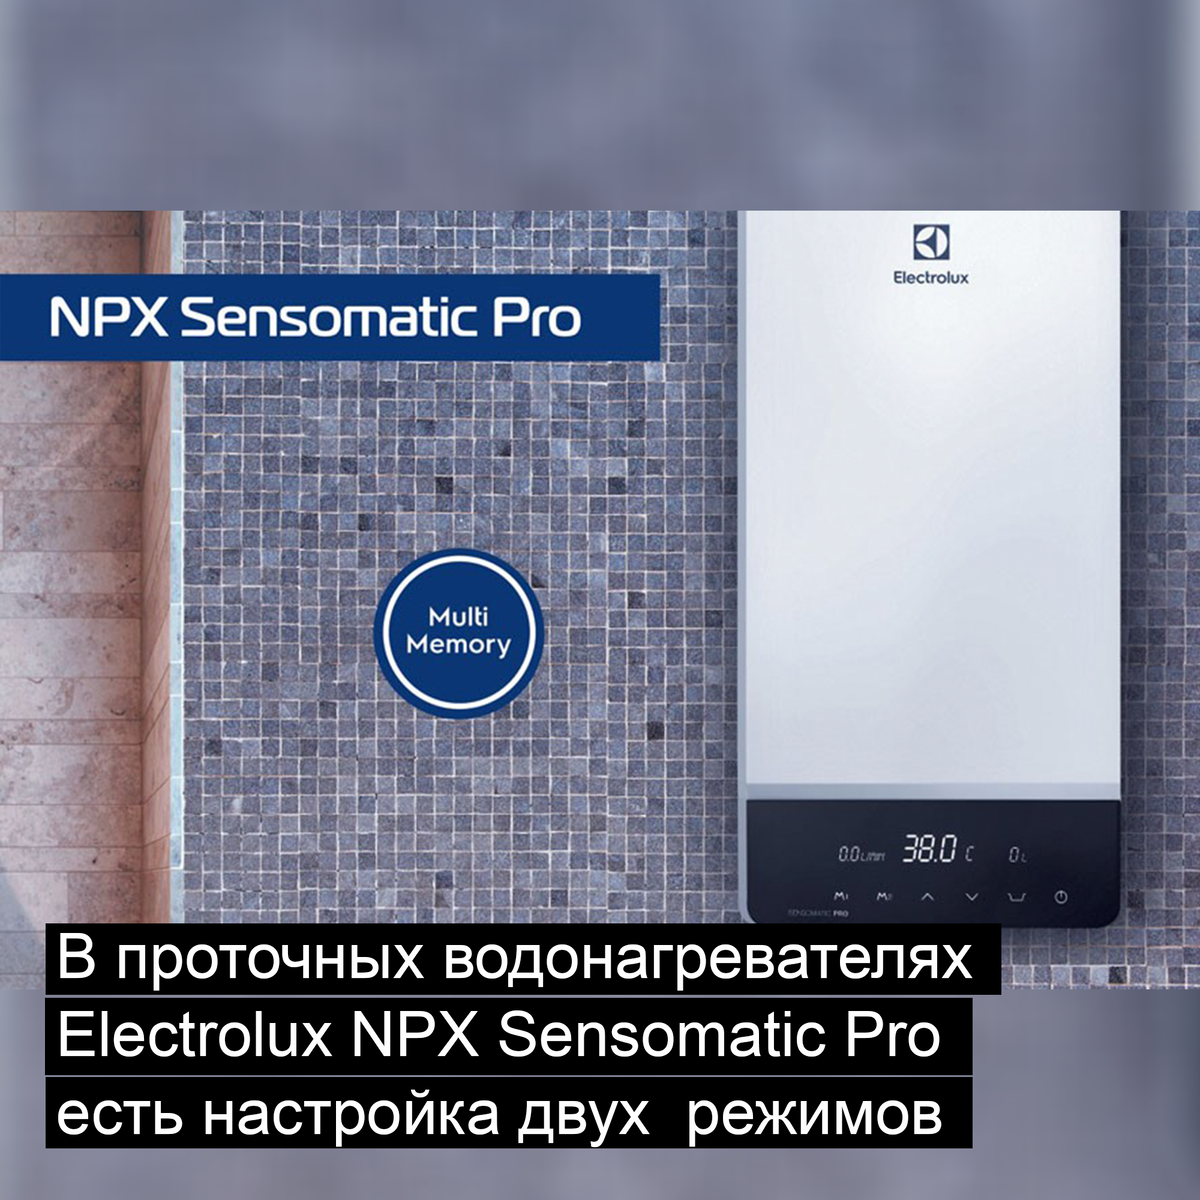 В серии проточных водонагревателей Electrolux NPX Sensomatic Pro есть настройка двух индивидуальных температурных режима.